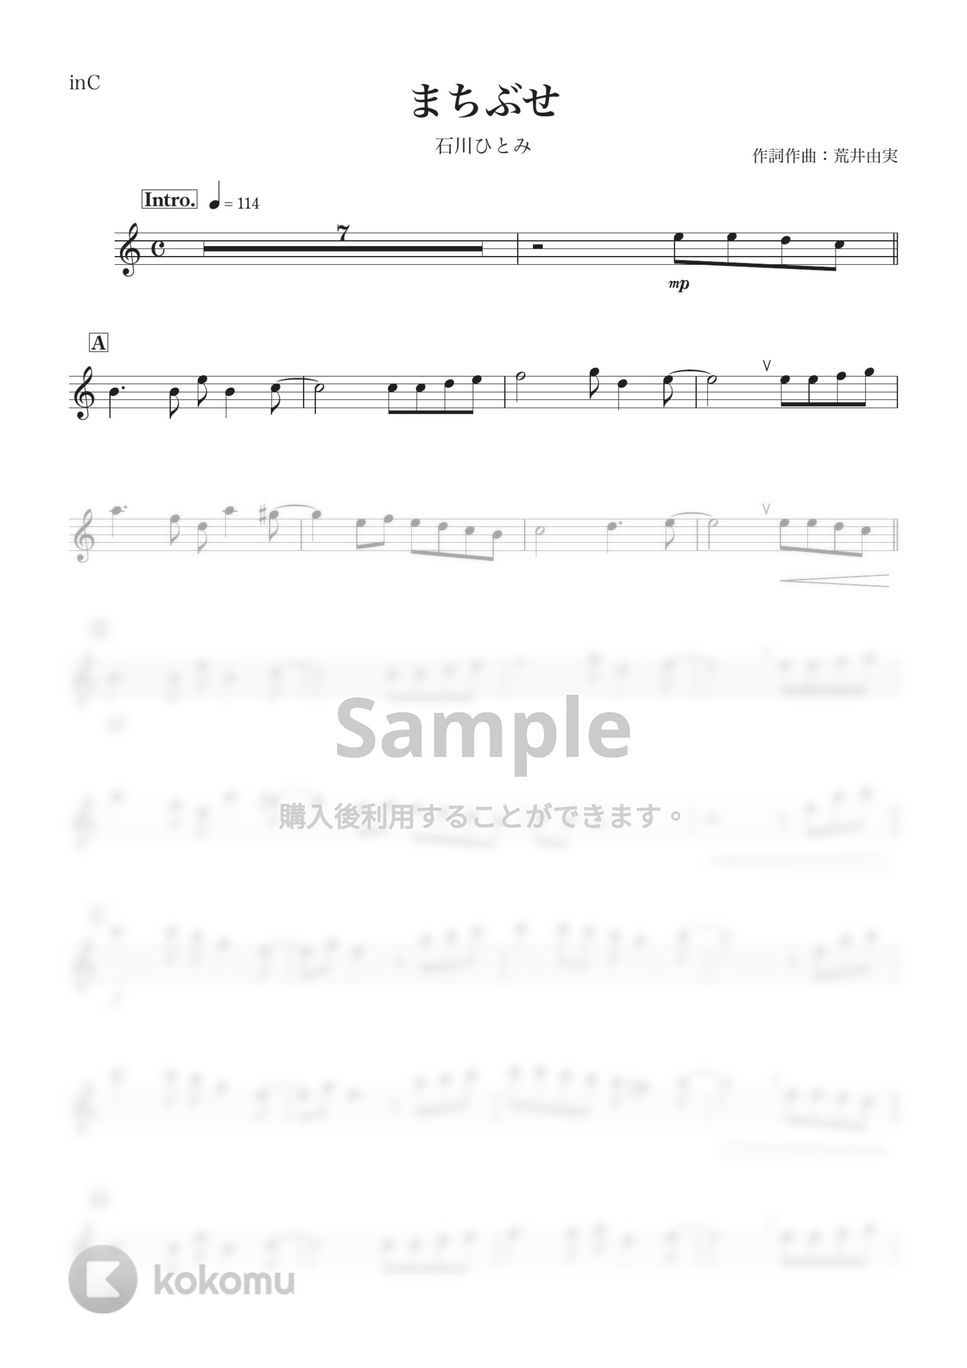 石川ひとみ - まちぶせ (C) by kanamusic